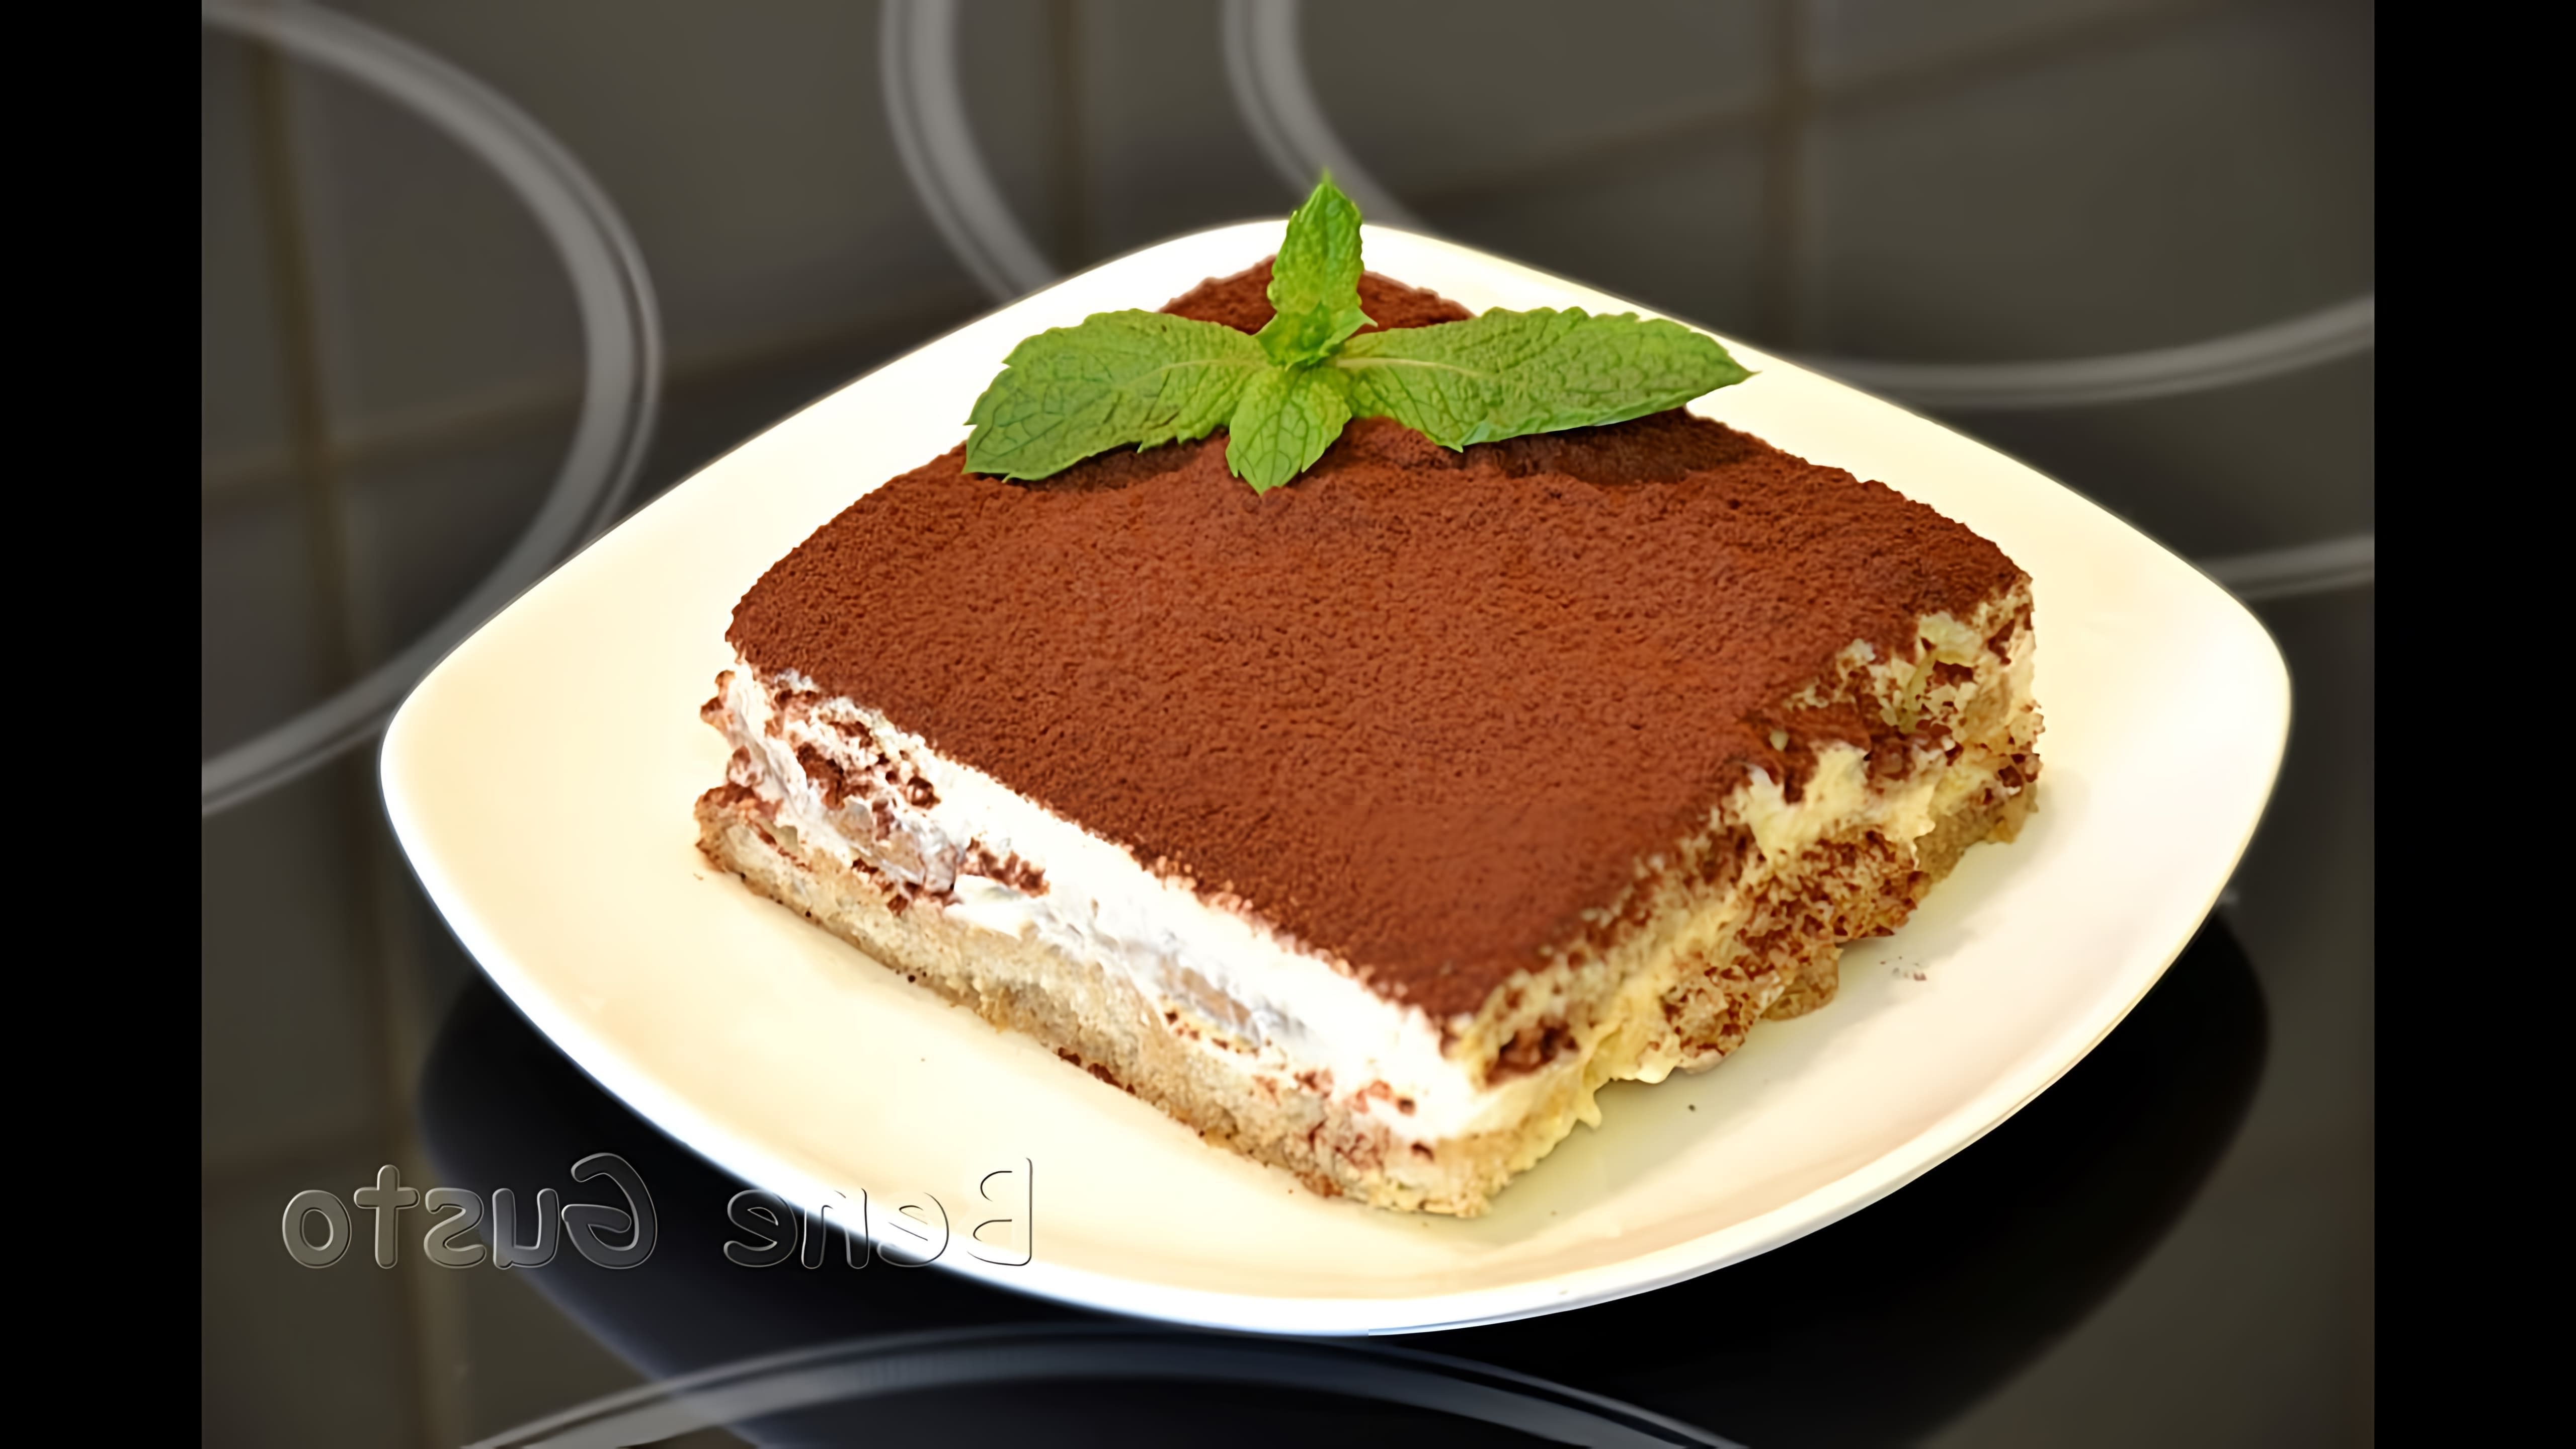 Классический торт Тирамису с маскарпоне - это итальянский десерт, который готовится из свежих ингредиентов